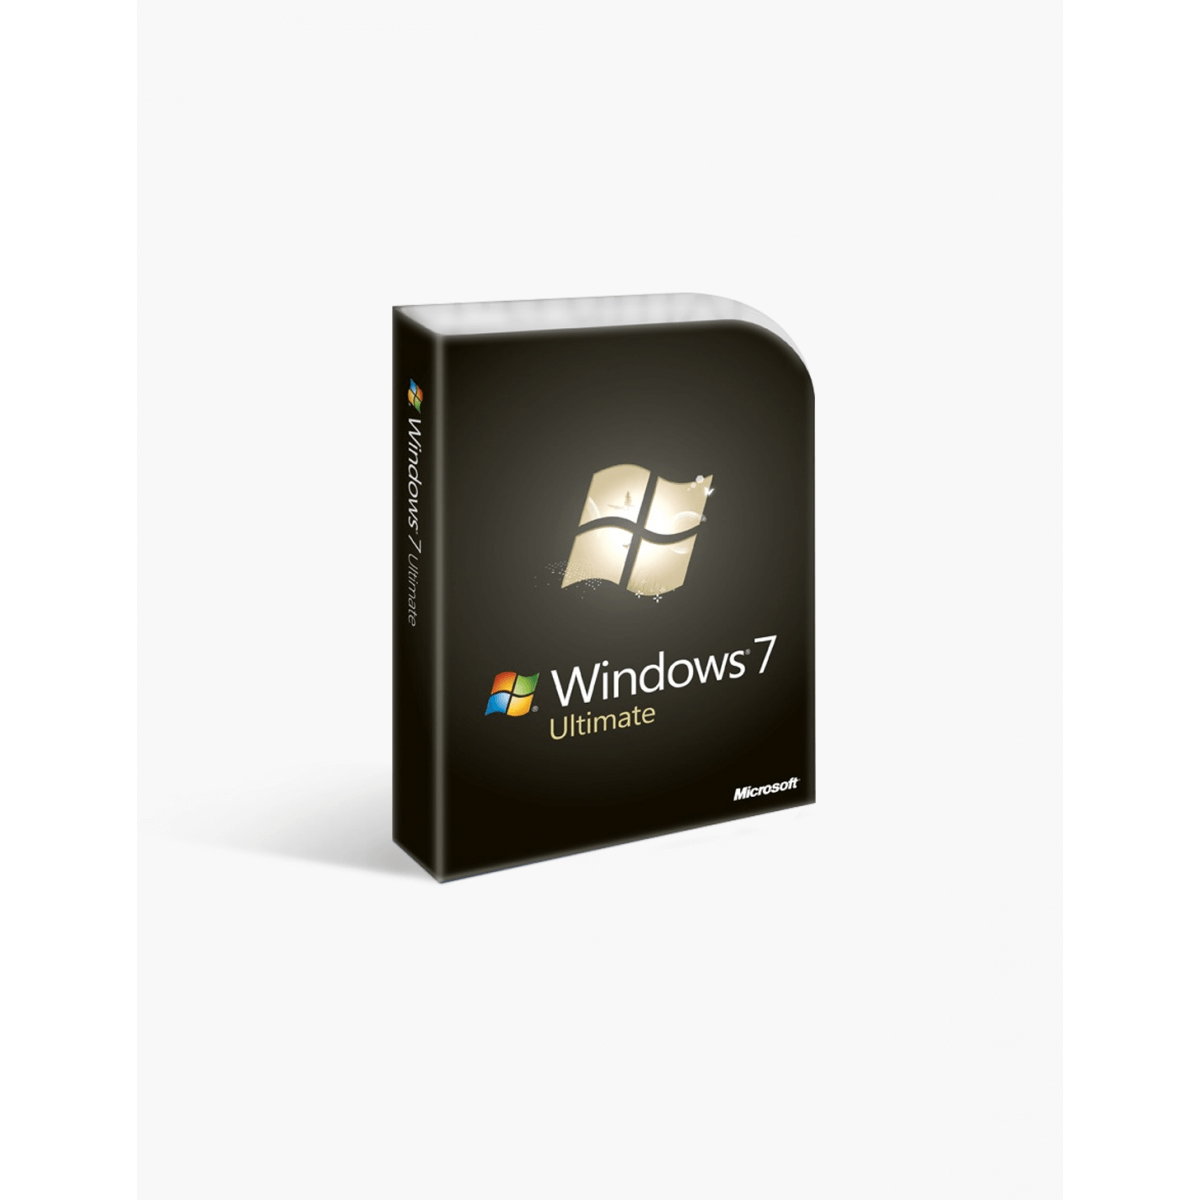 windows 7 ultimate 64 bit iso download utorrent